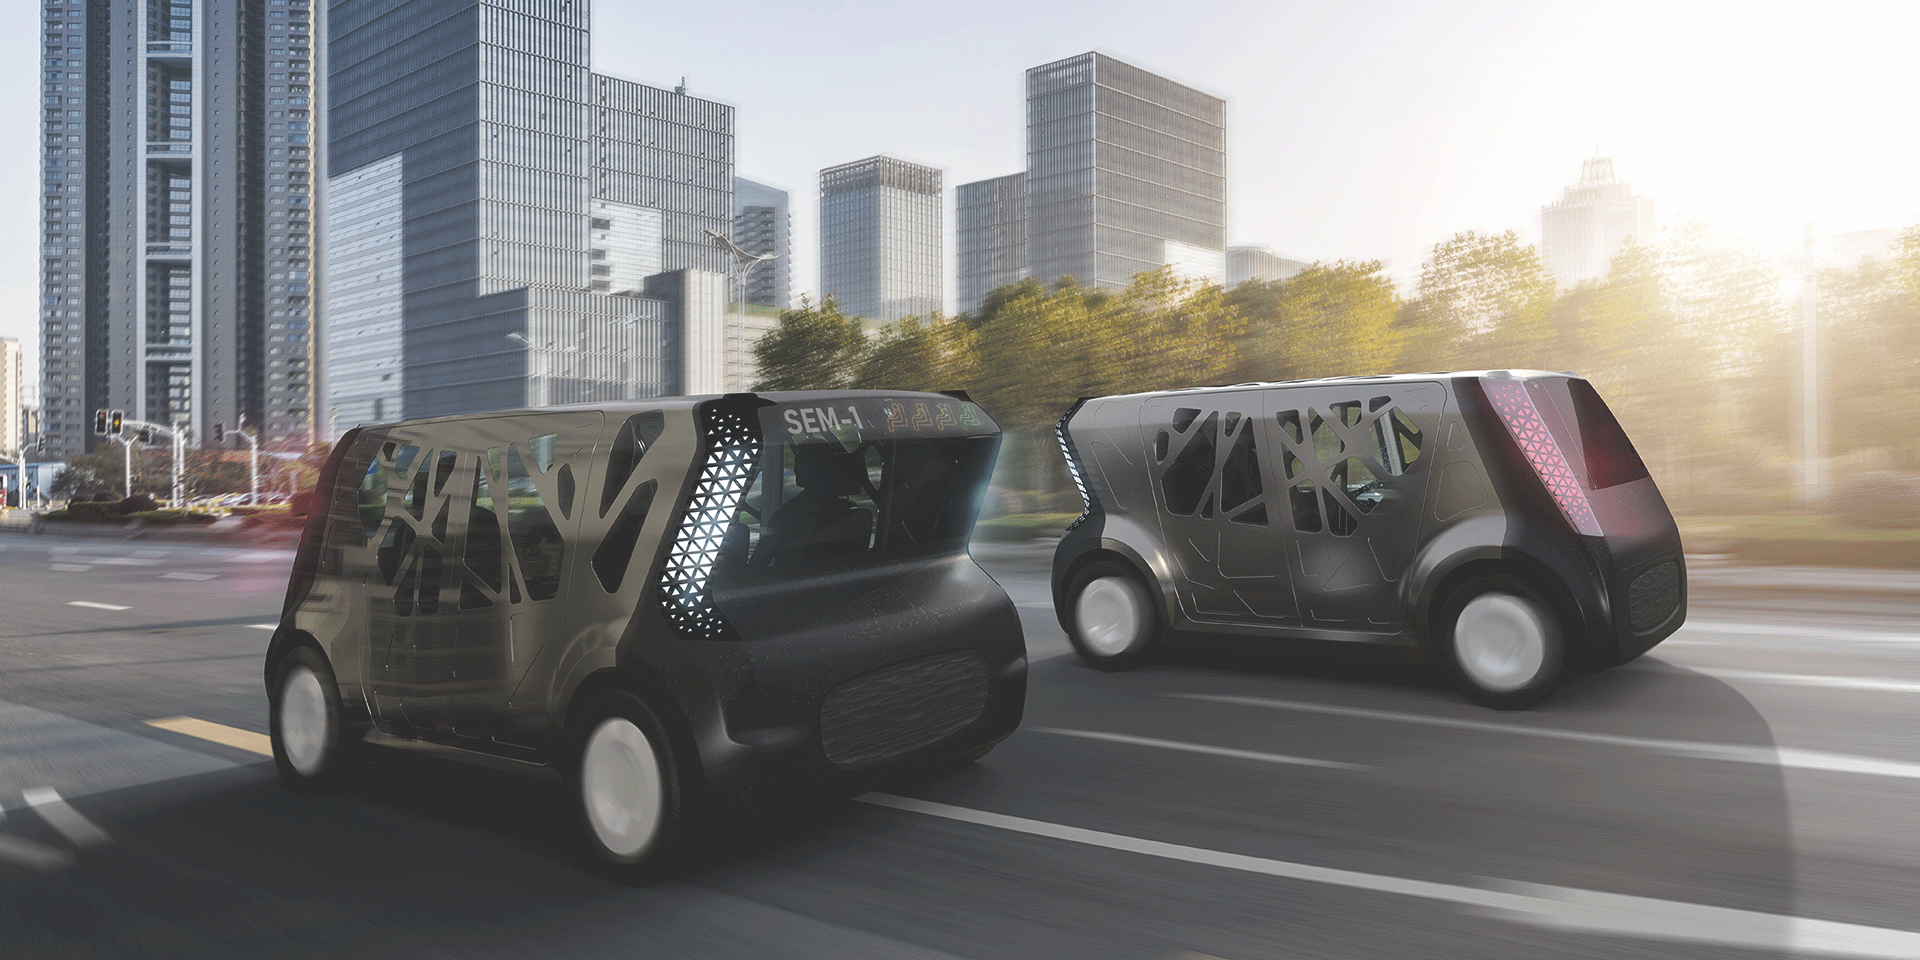 Steel E-Motive autonomous vehicles on the road